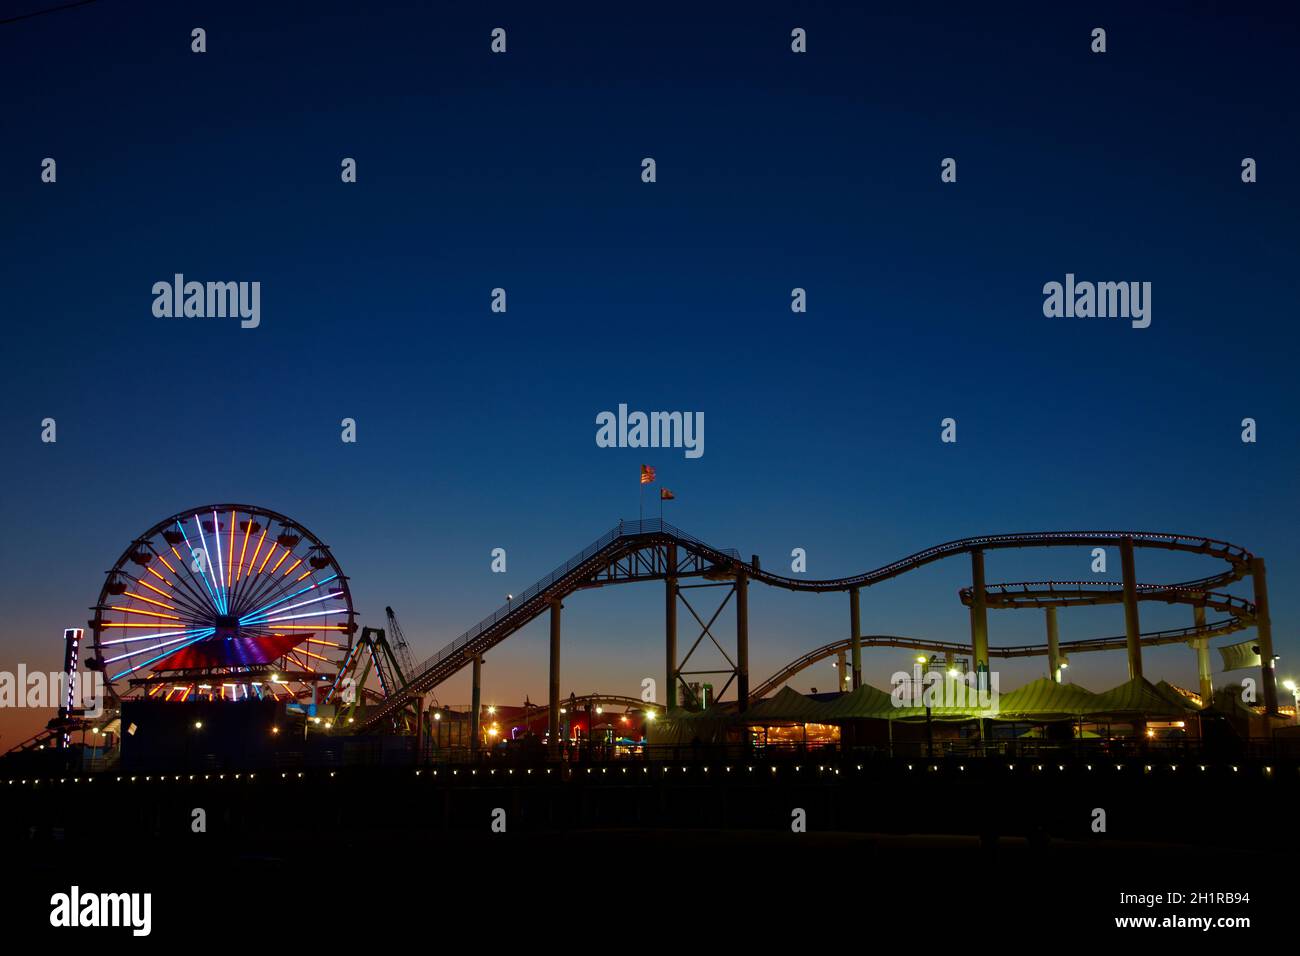 Grande roue et montagnes russes au crépuscule, Pacific Park, la jetée de Santa Monica, Santa Monica, Los Angeles, Californie, USA Banque D'Images